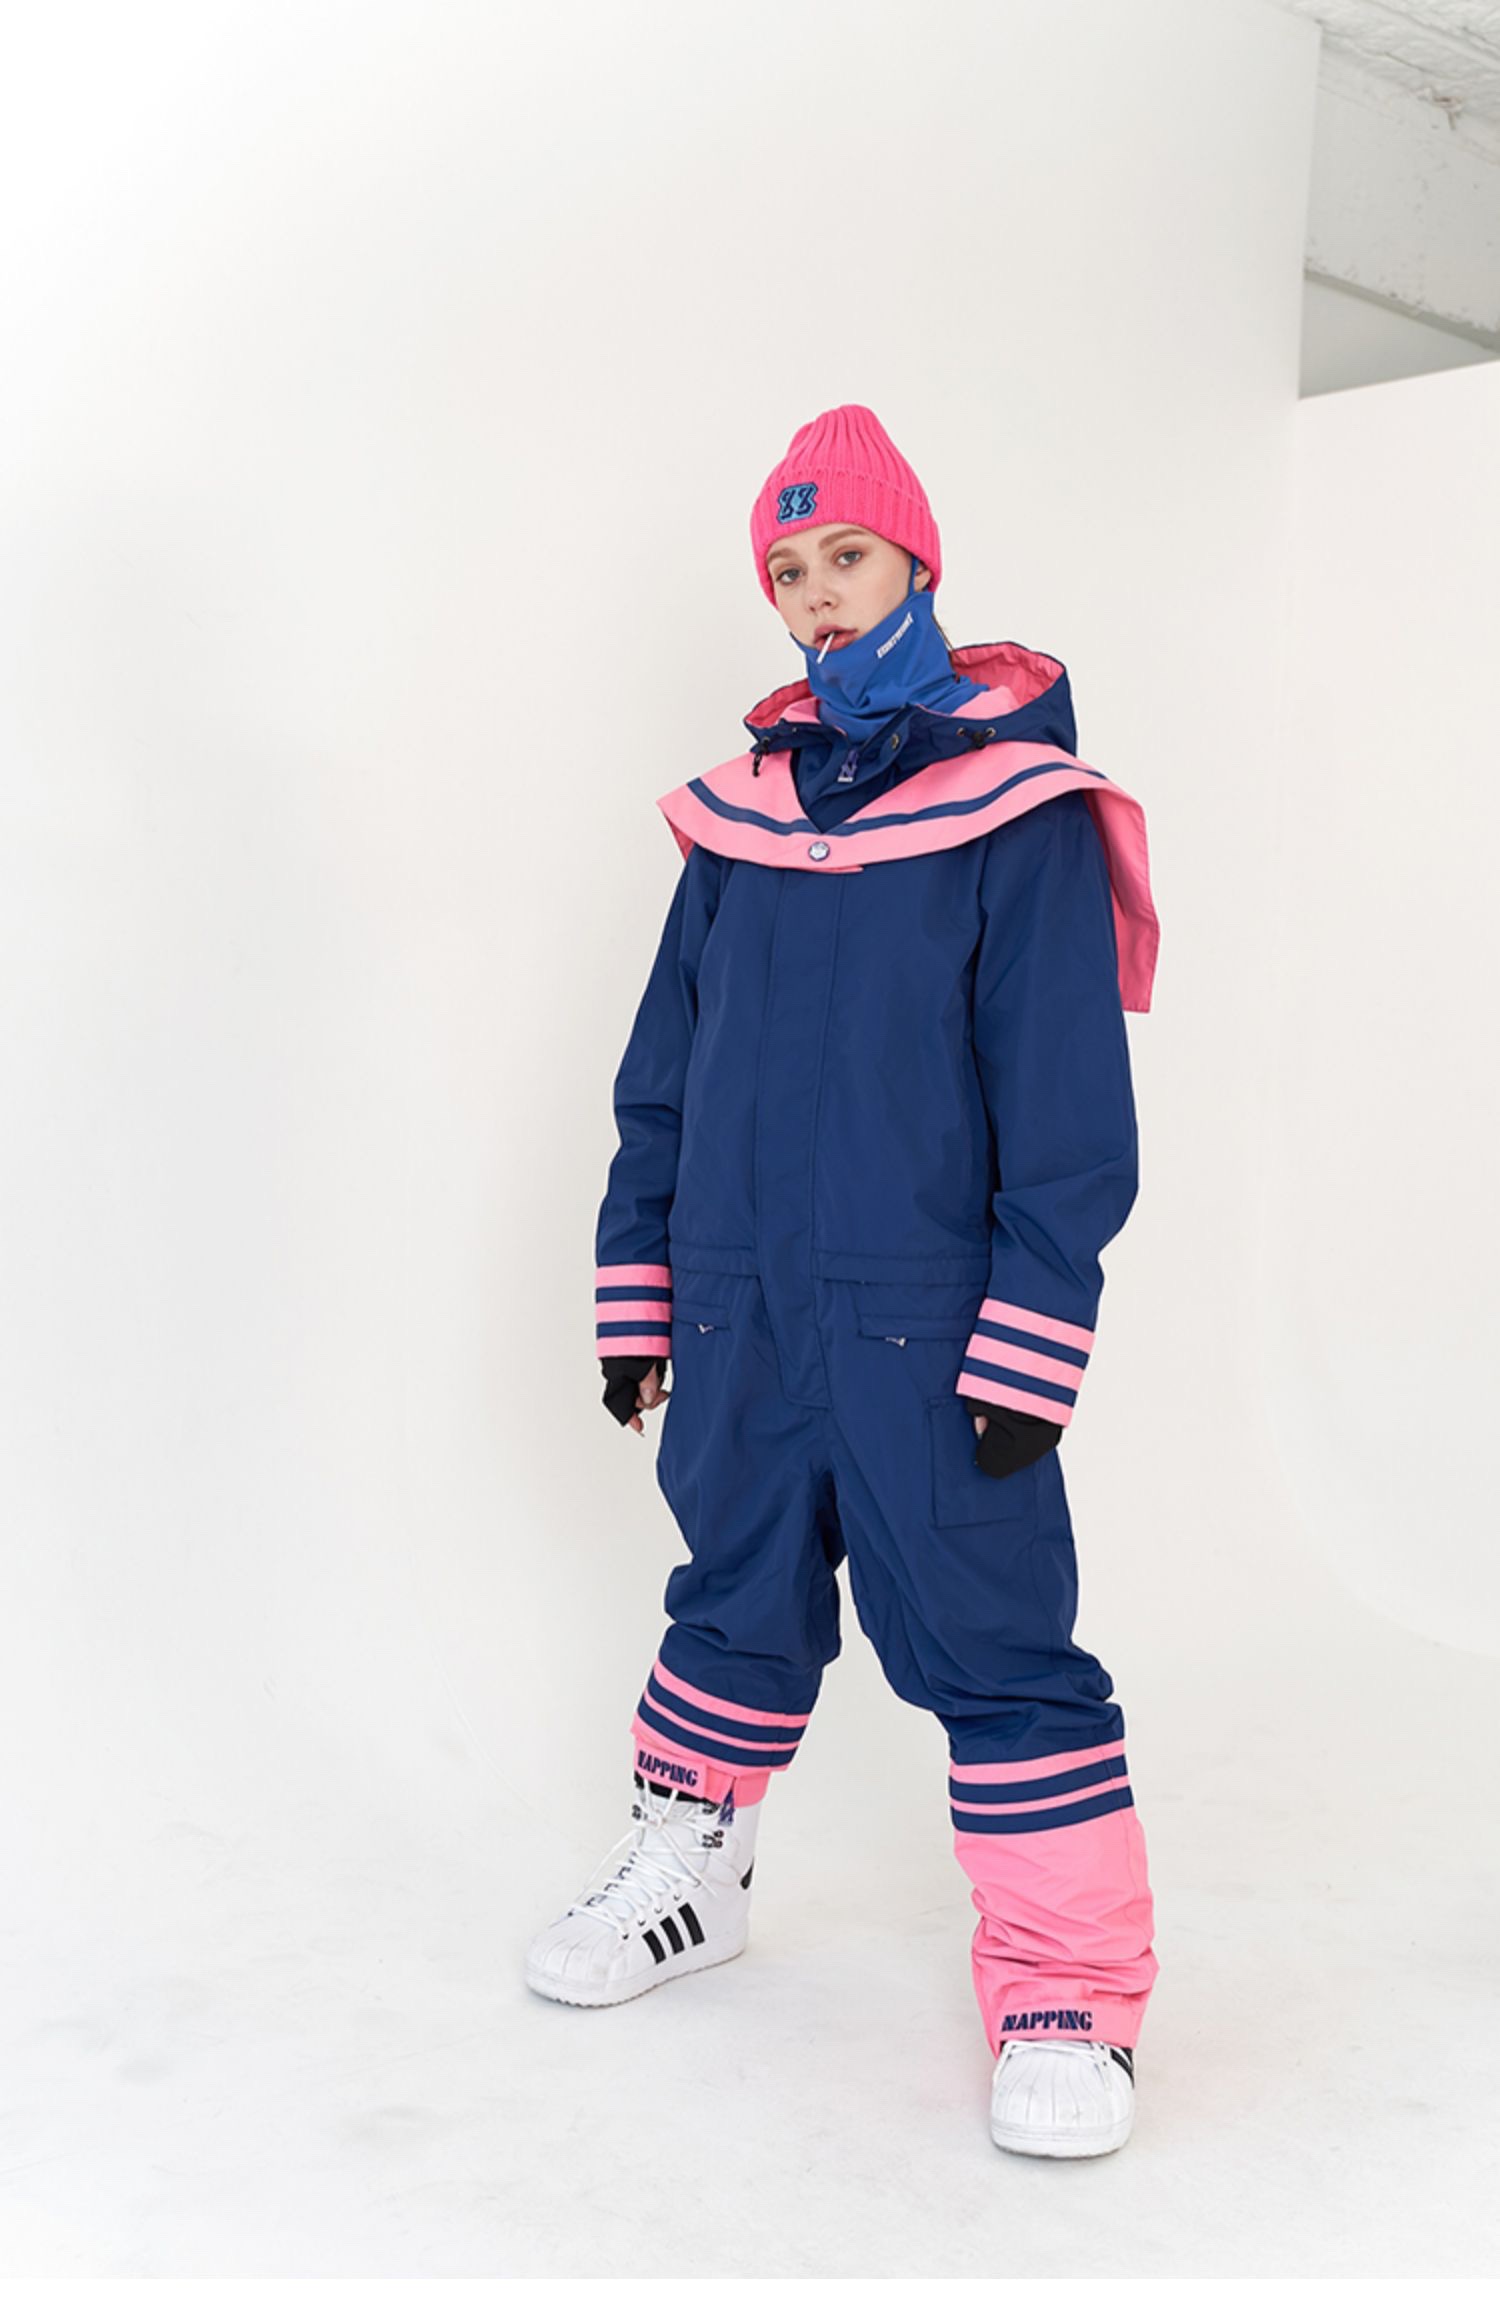 鞍山极速NAPPING88韩国连体滑雪服工装服单双板男女款防水滑雪衣